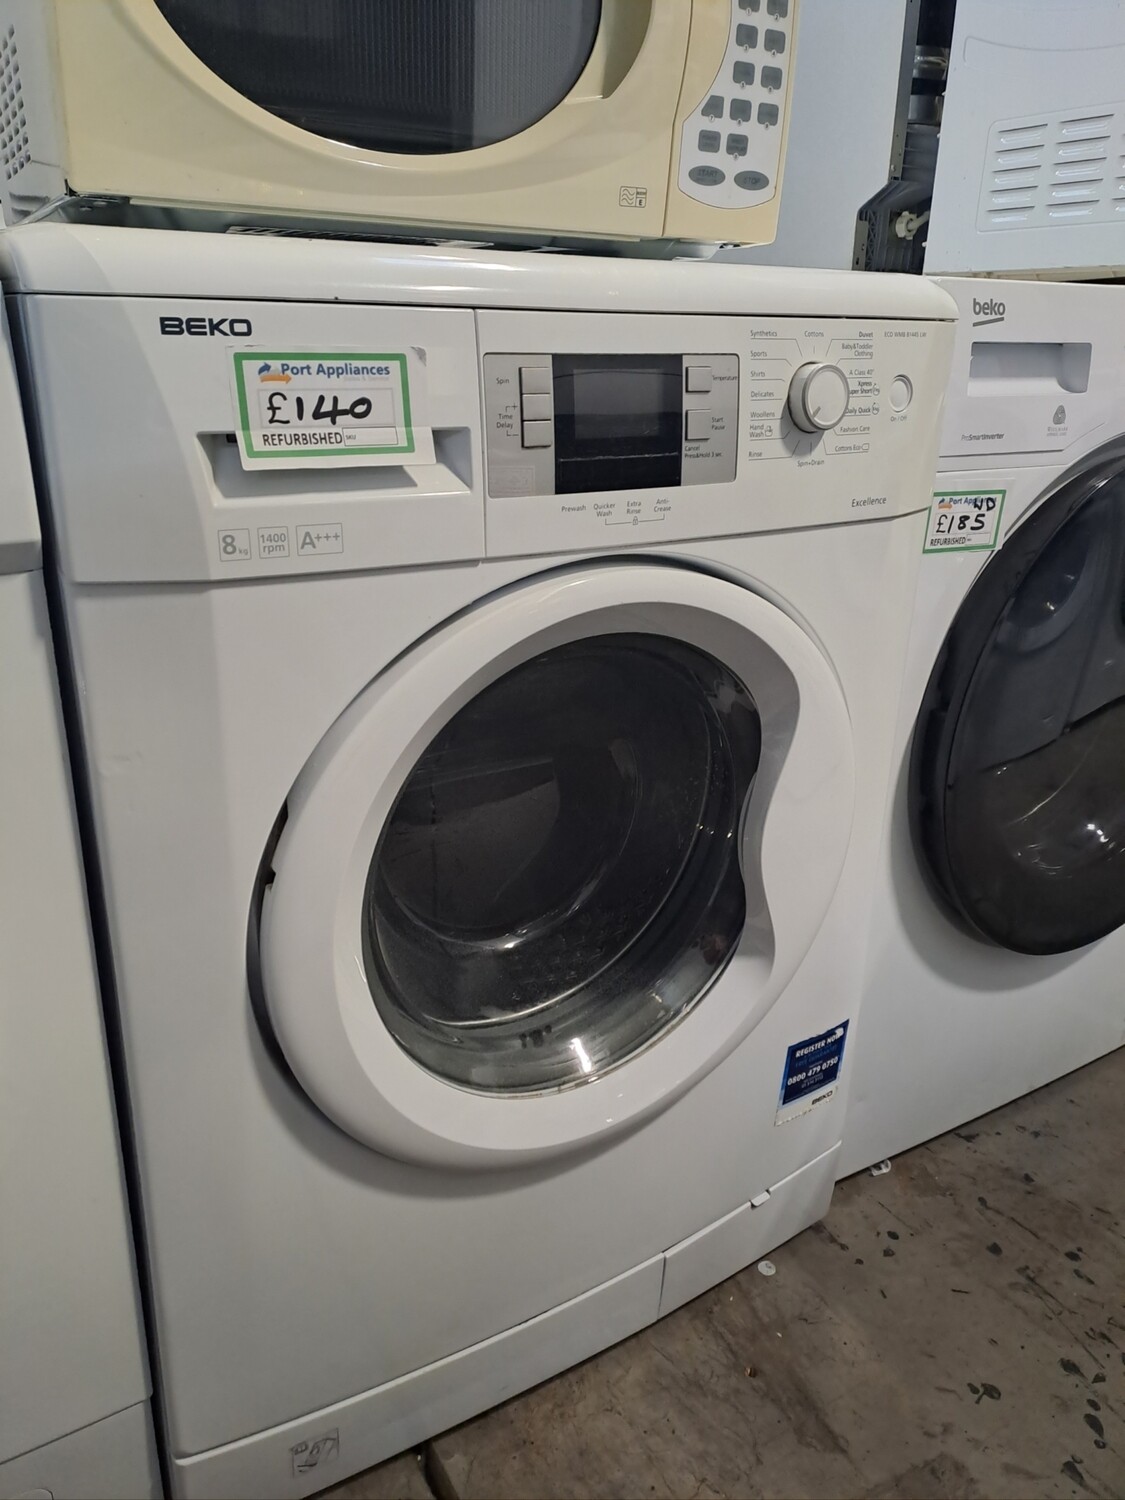 Beko A+++ 8kg Load 1400 Spin Washing Machine - White - Refurbished - 6 Month Guarantee